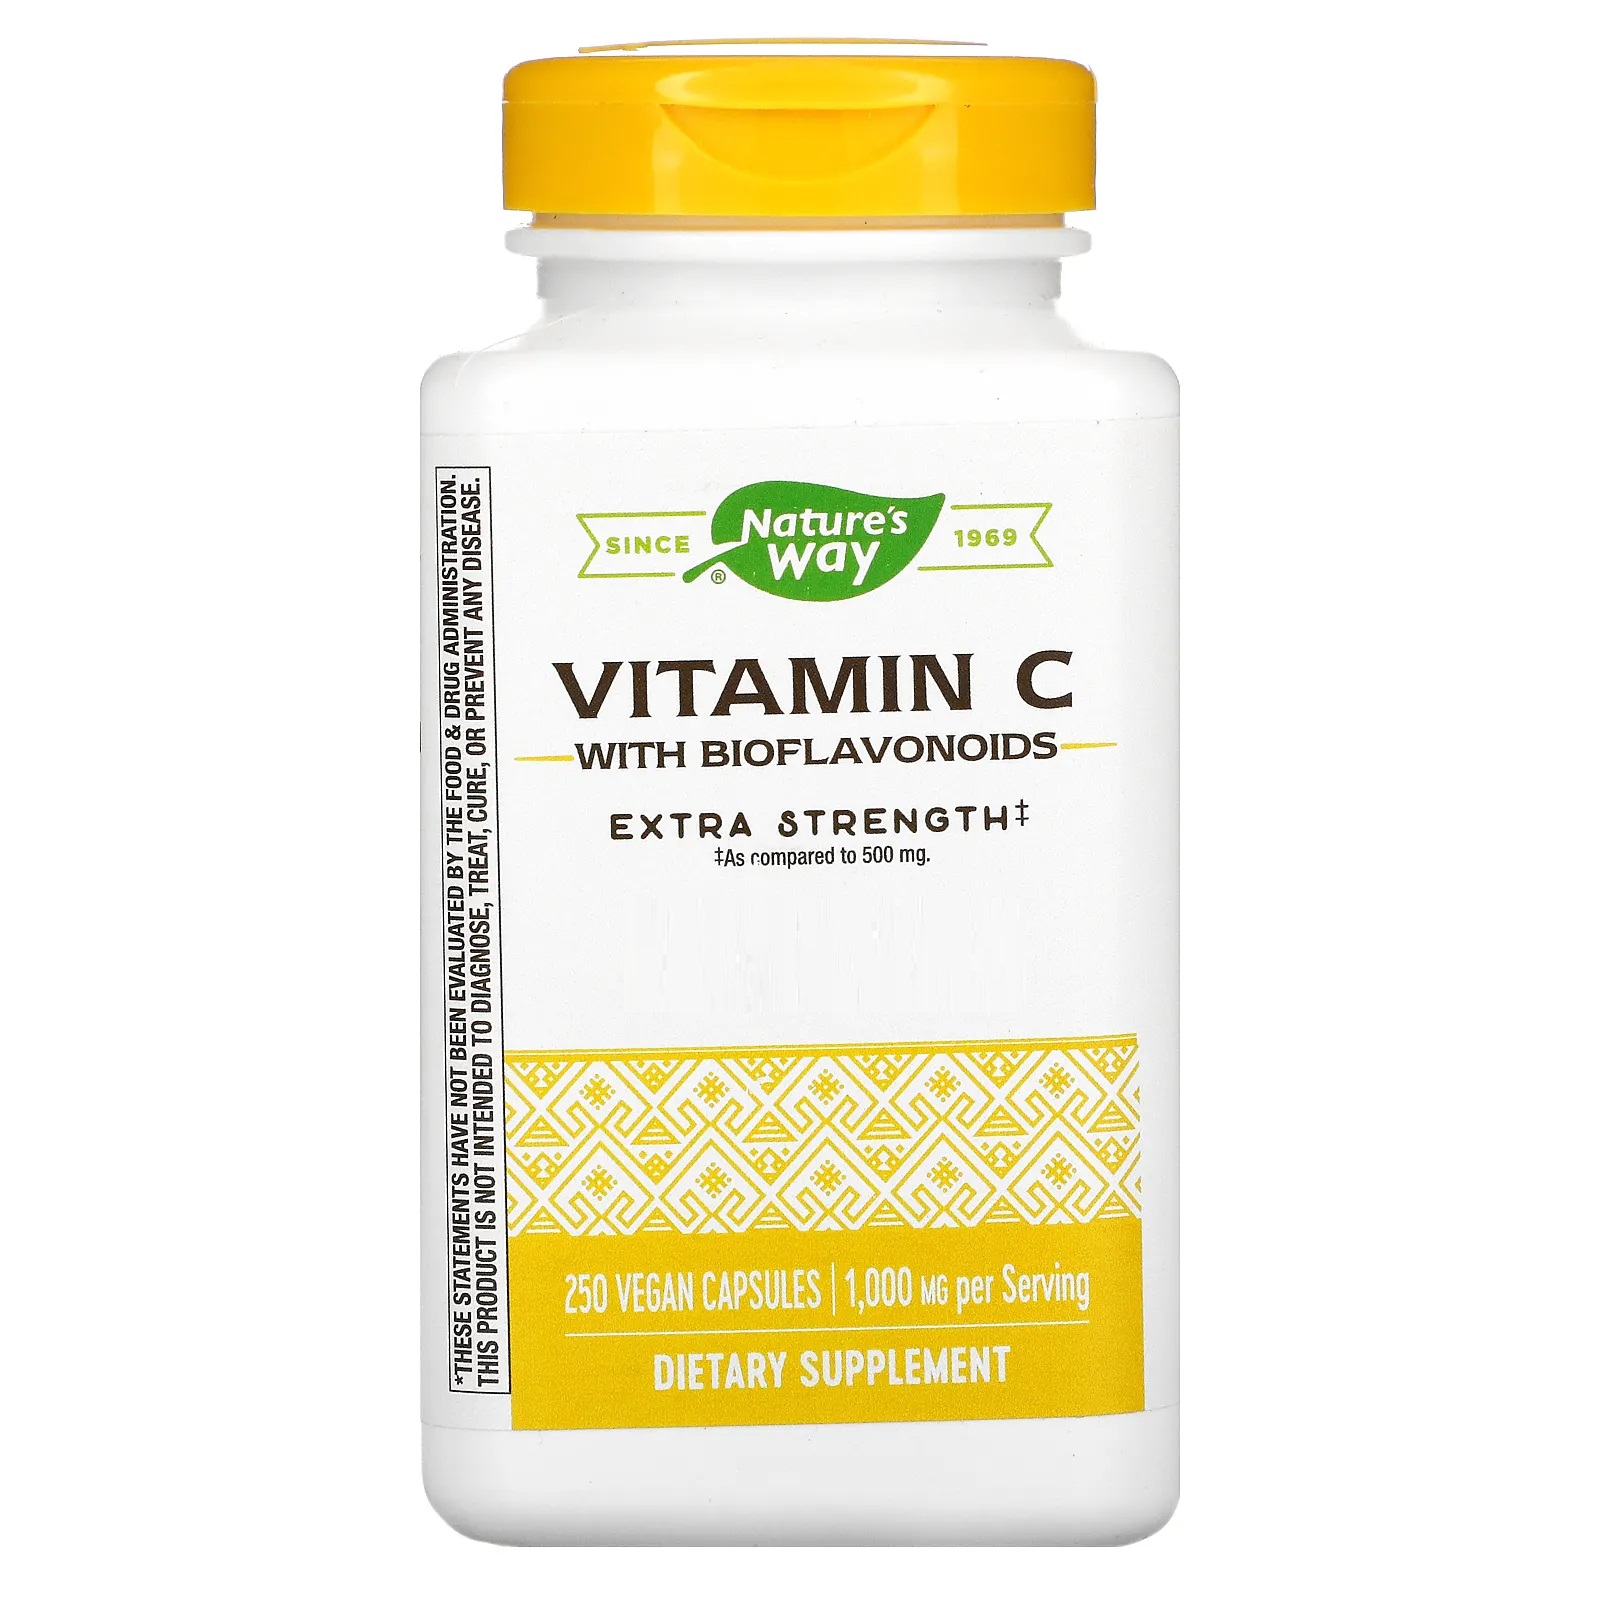 네이쳐스웨이 <b>비타민C</b> 1000mg Bioflavonoids 250베지캡슐